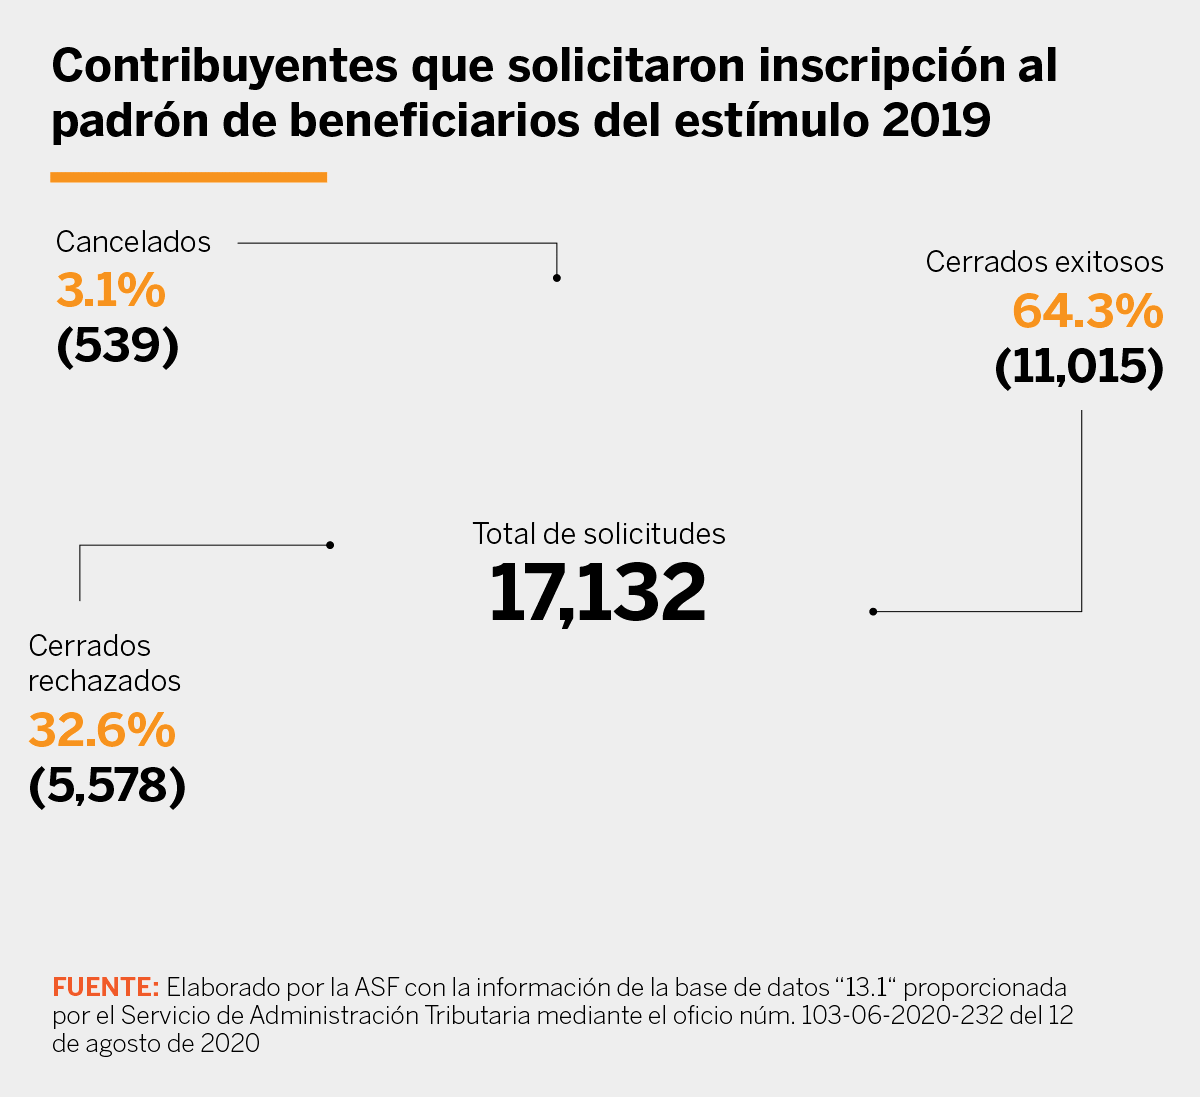 Grafica sobre contribuyentes que solicitaron inscripcion al padron de beneficiarios del estimulo 2019